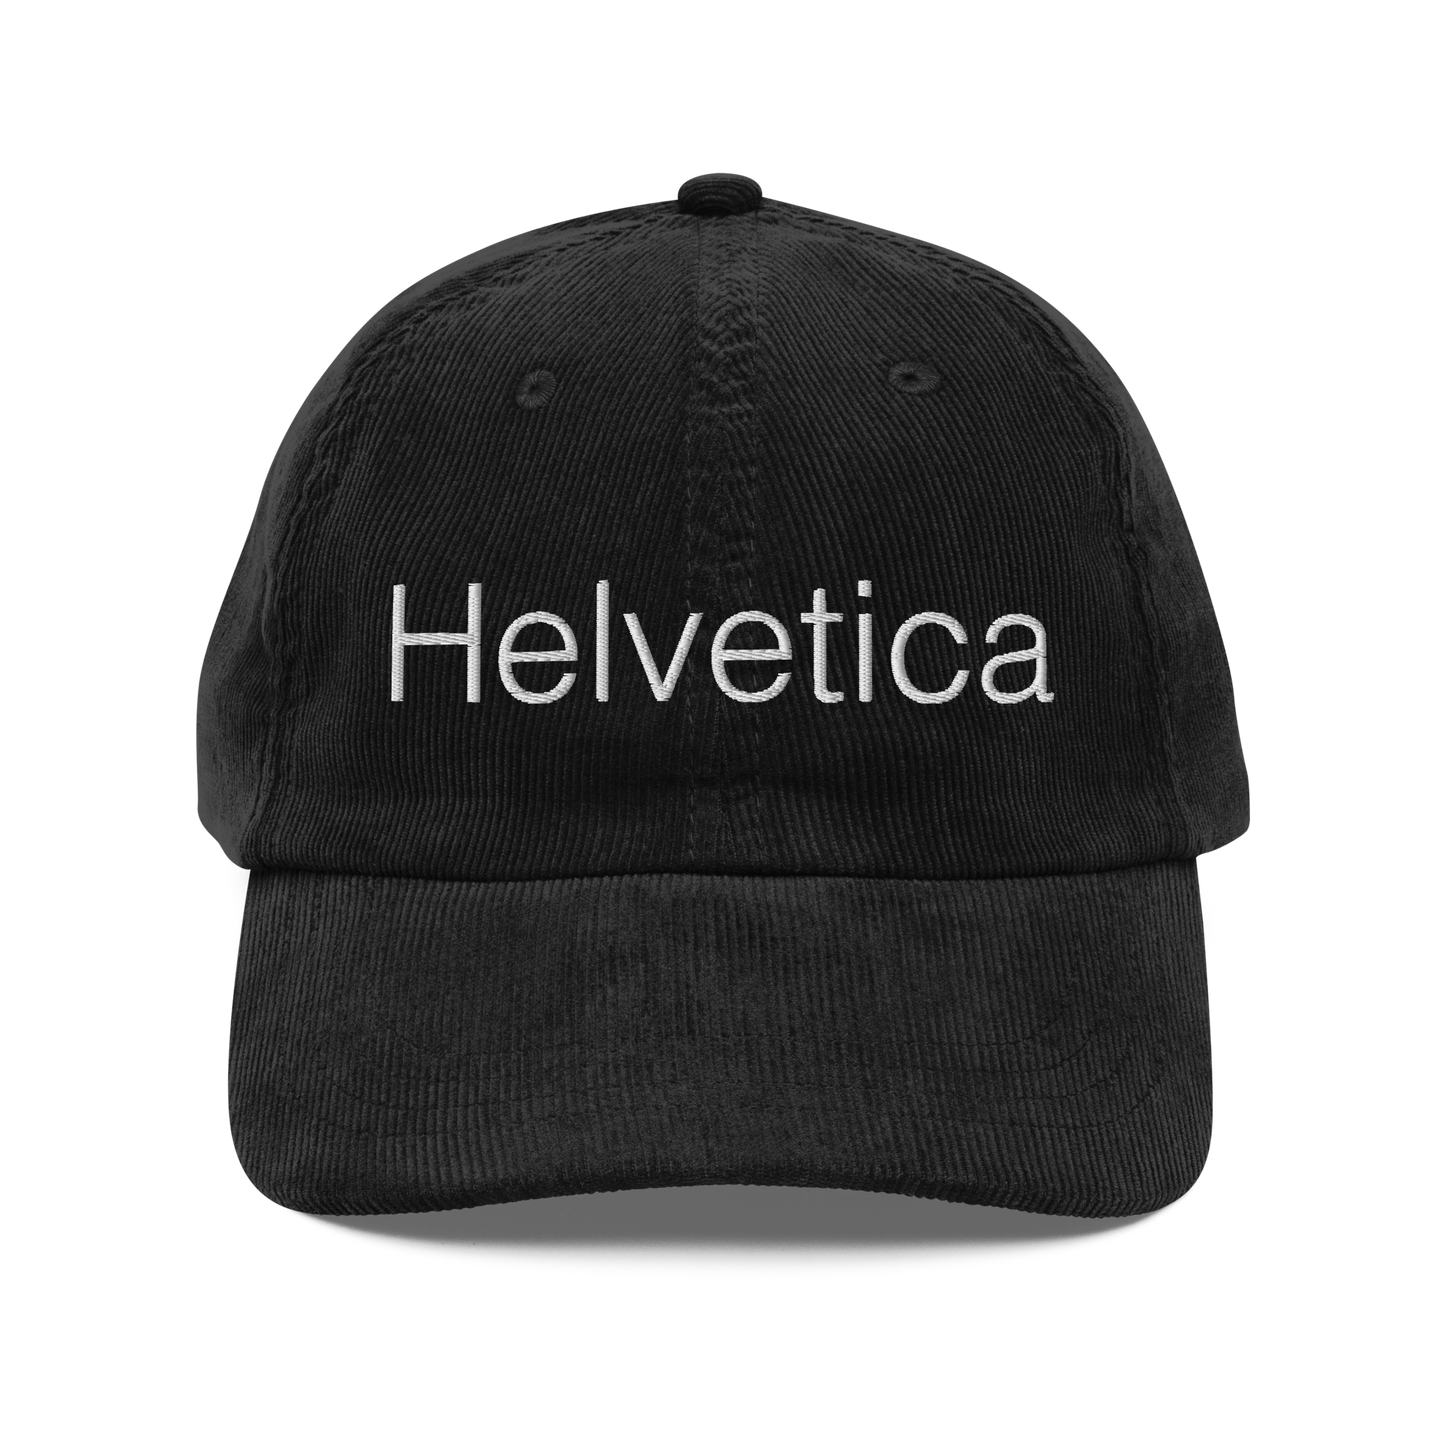 Helvetica corduroy cap